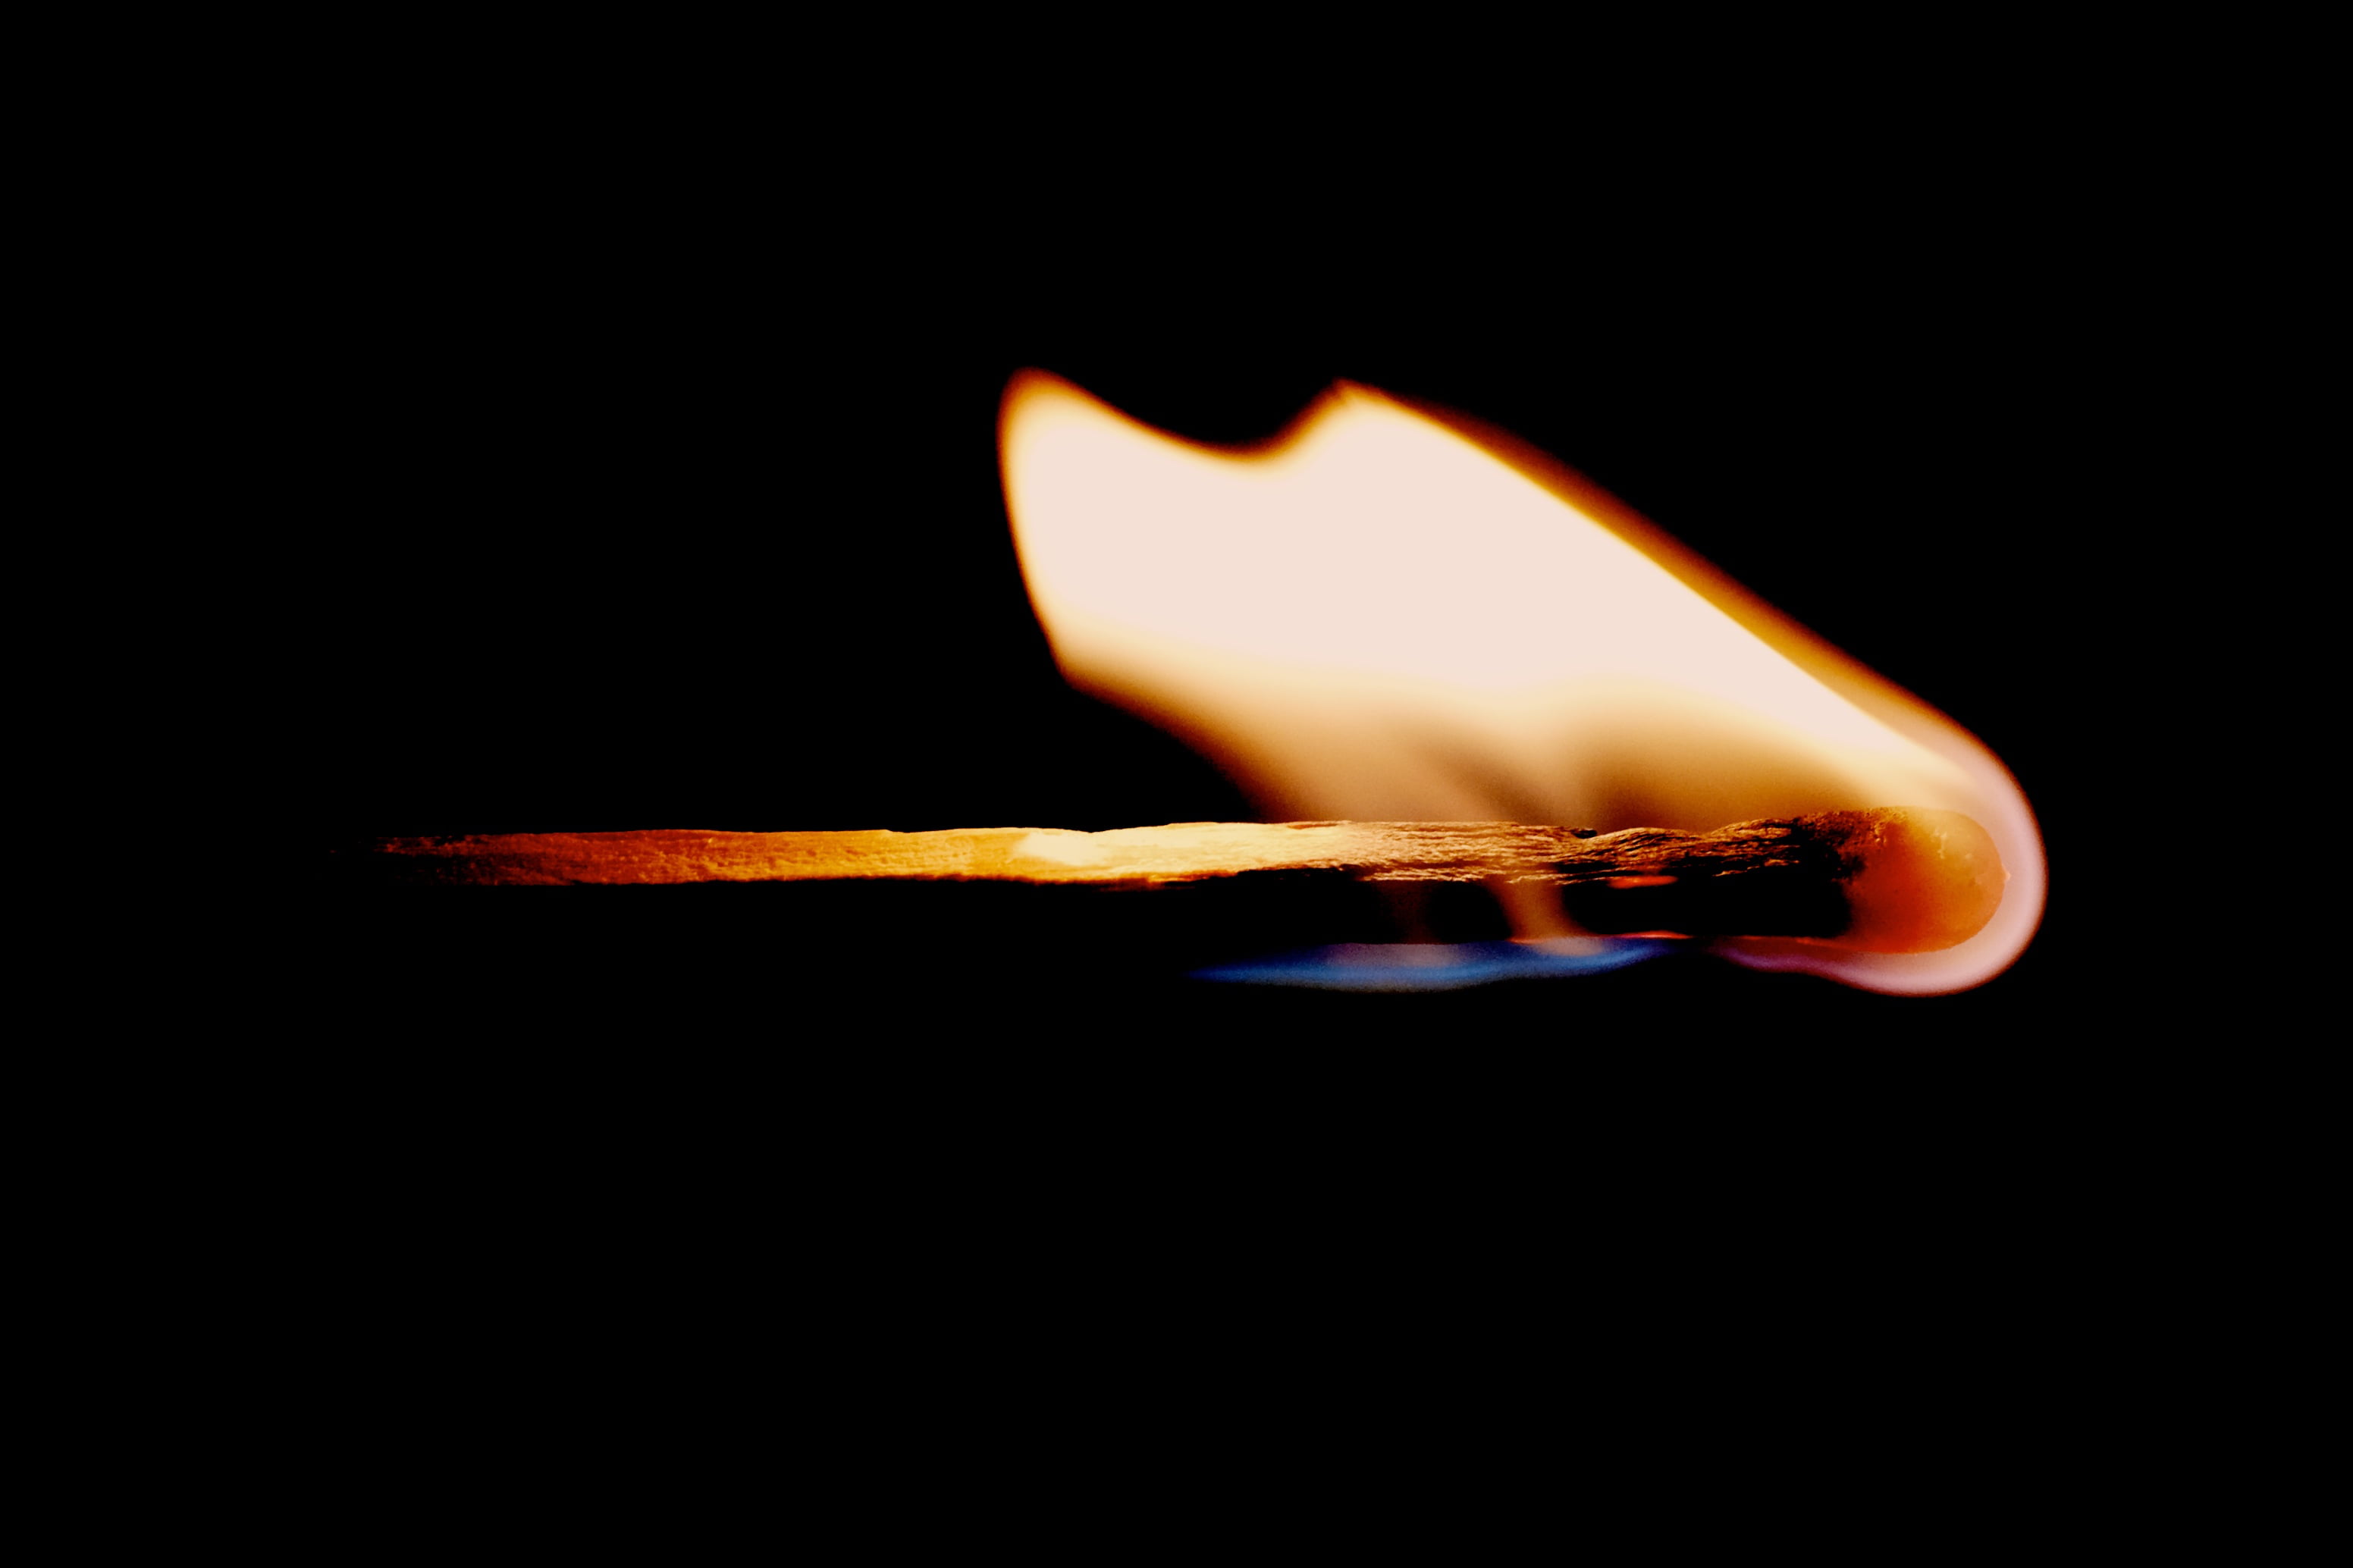 matchstick burning, Match, Fire, Flame